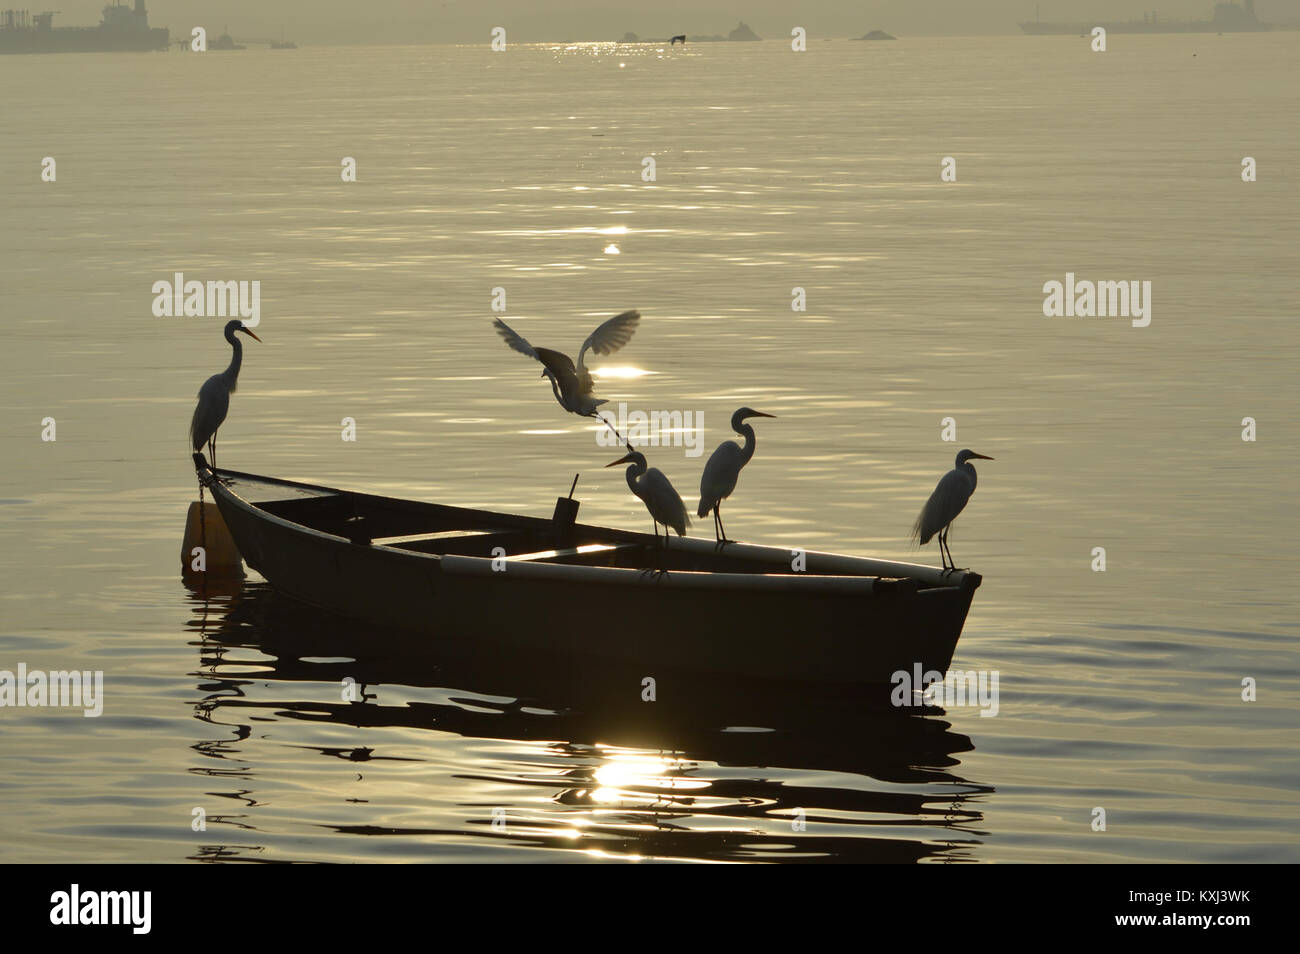 Amanhecer na Ilha do Governador - Rio de Janeiro. Garças pescando. Stock Photo